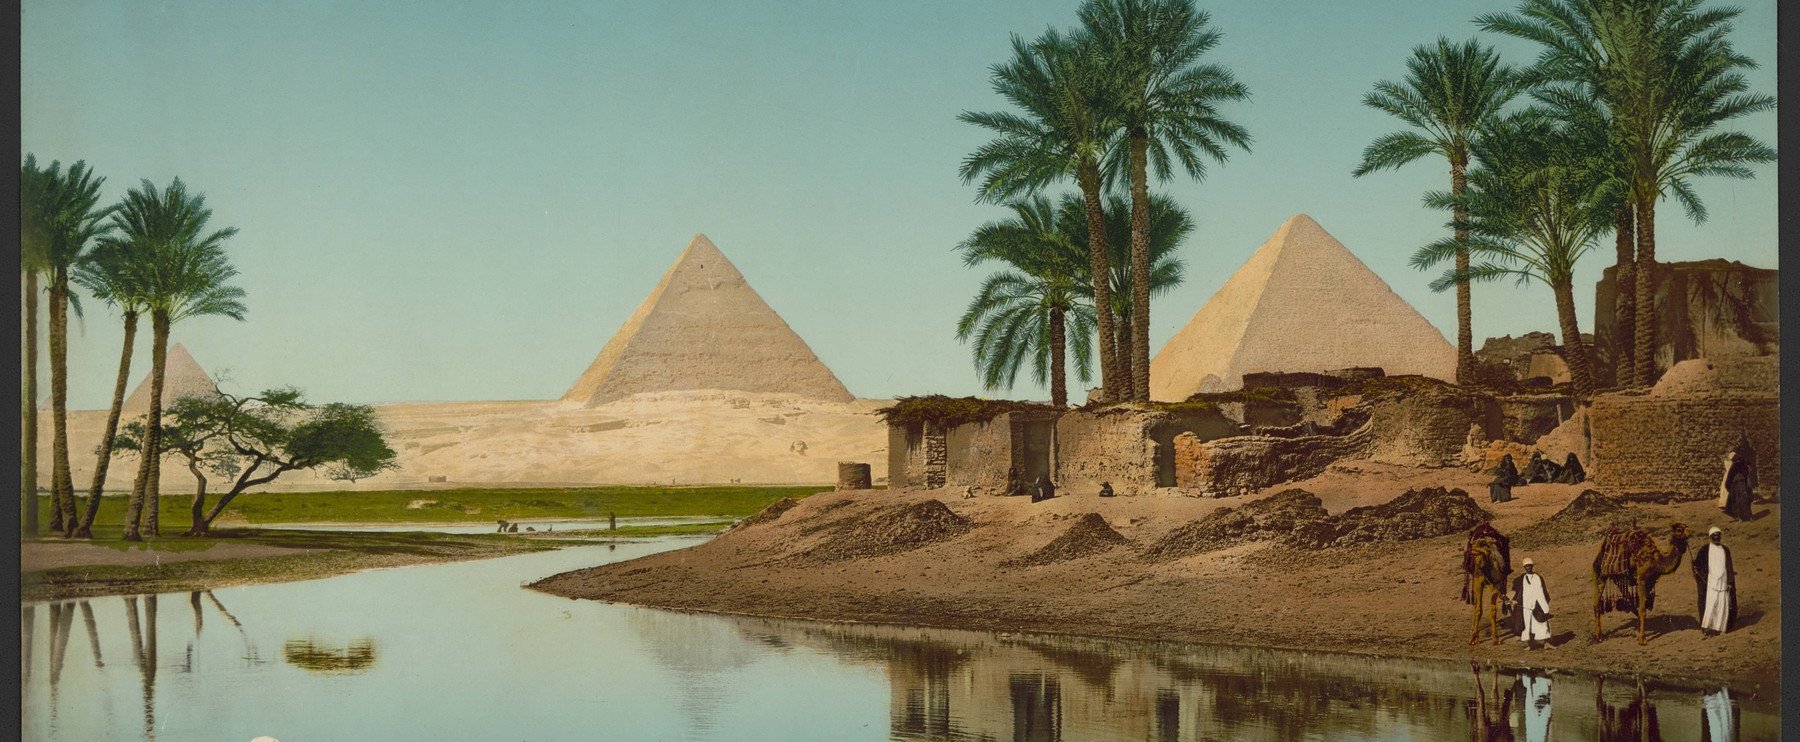 A NASA űrhajós rendkívüli fotót közölt az egyiptomi piramisokról, sokáig kellett várnia rá, de sikerült - így még sosem láthattuk a három nagy piramist egymás mellett